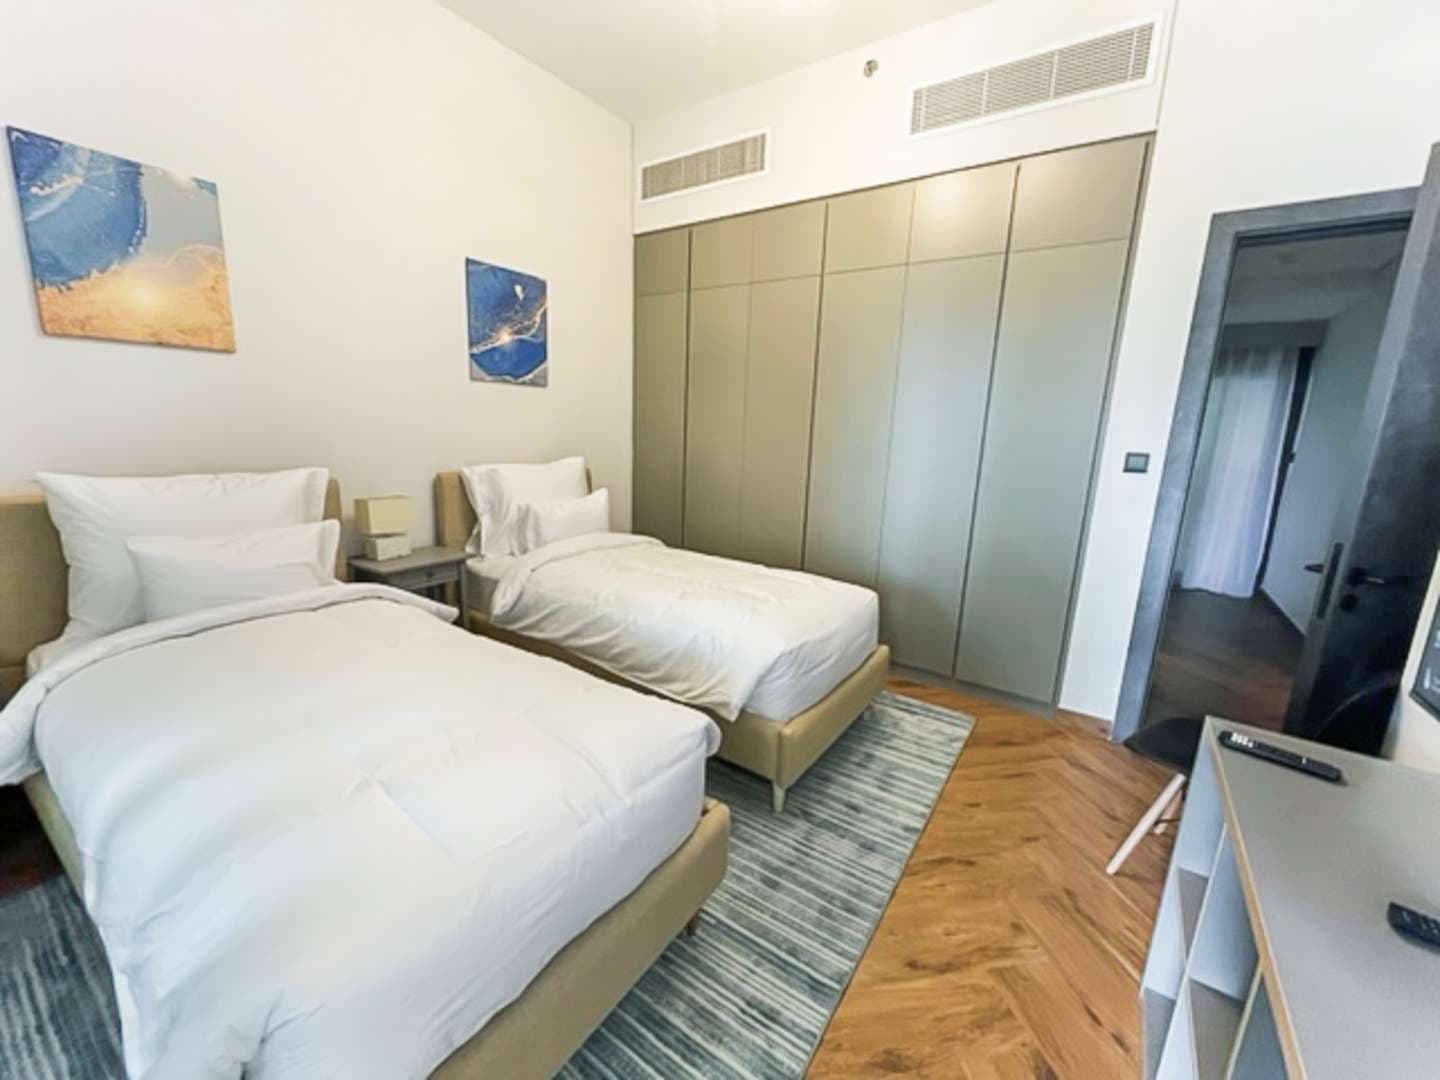 2 Bedroom Villa For Rent Dubai Marina Moon Lp11825 14864cbc63a8c200.jpg